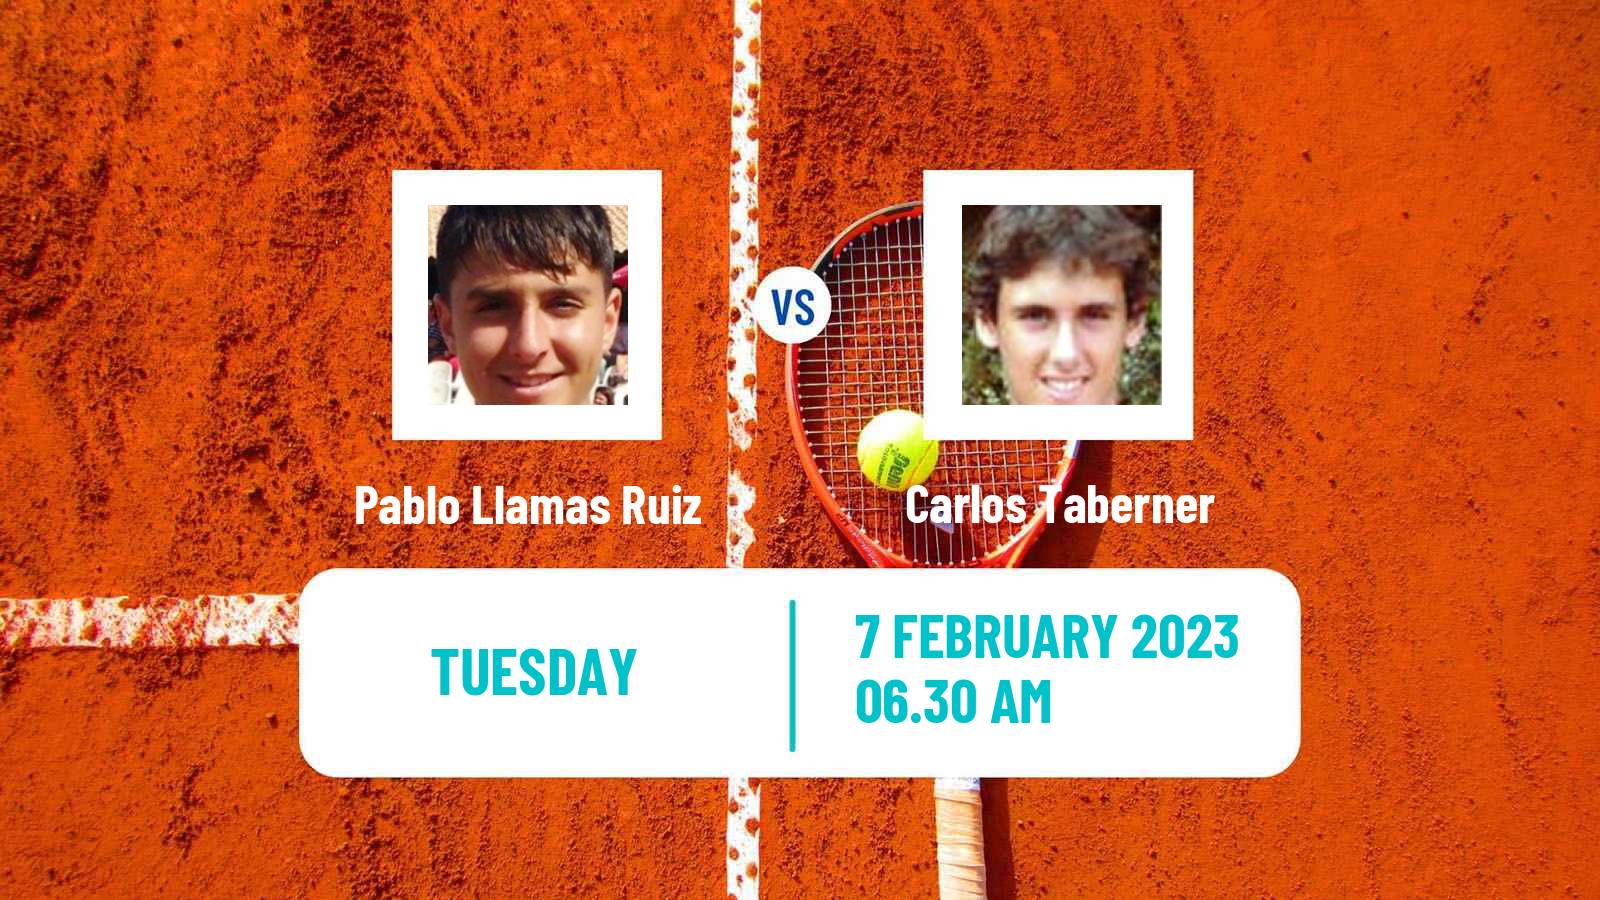 Tennis ATP Challenger Pablo Llamas Ruiz - Carlos Taberner